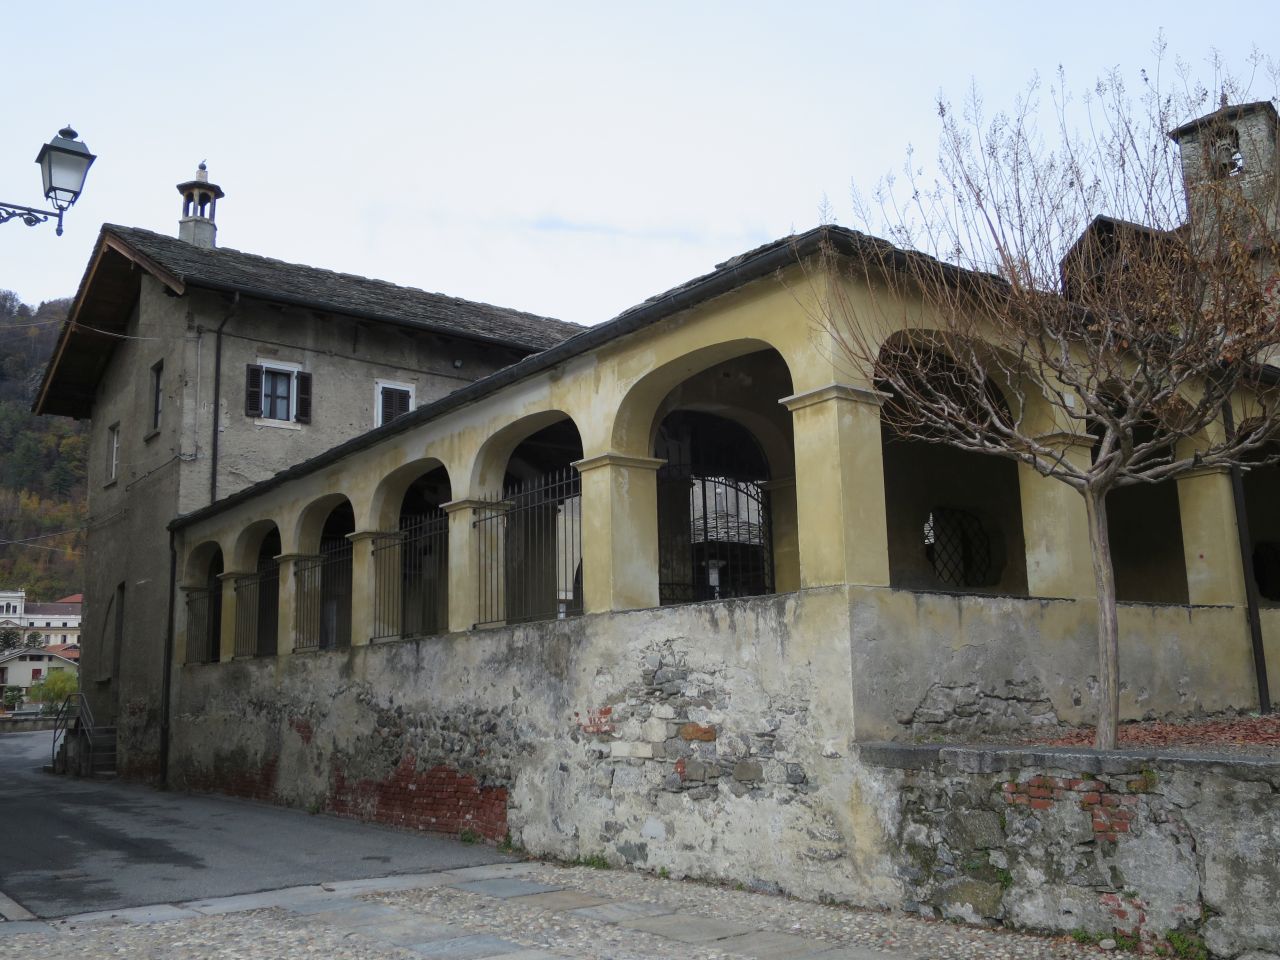 Convento di Santa Maria delle Grazie (convento) - Varallo (VC) 